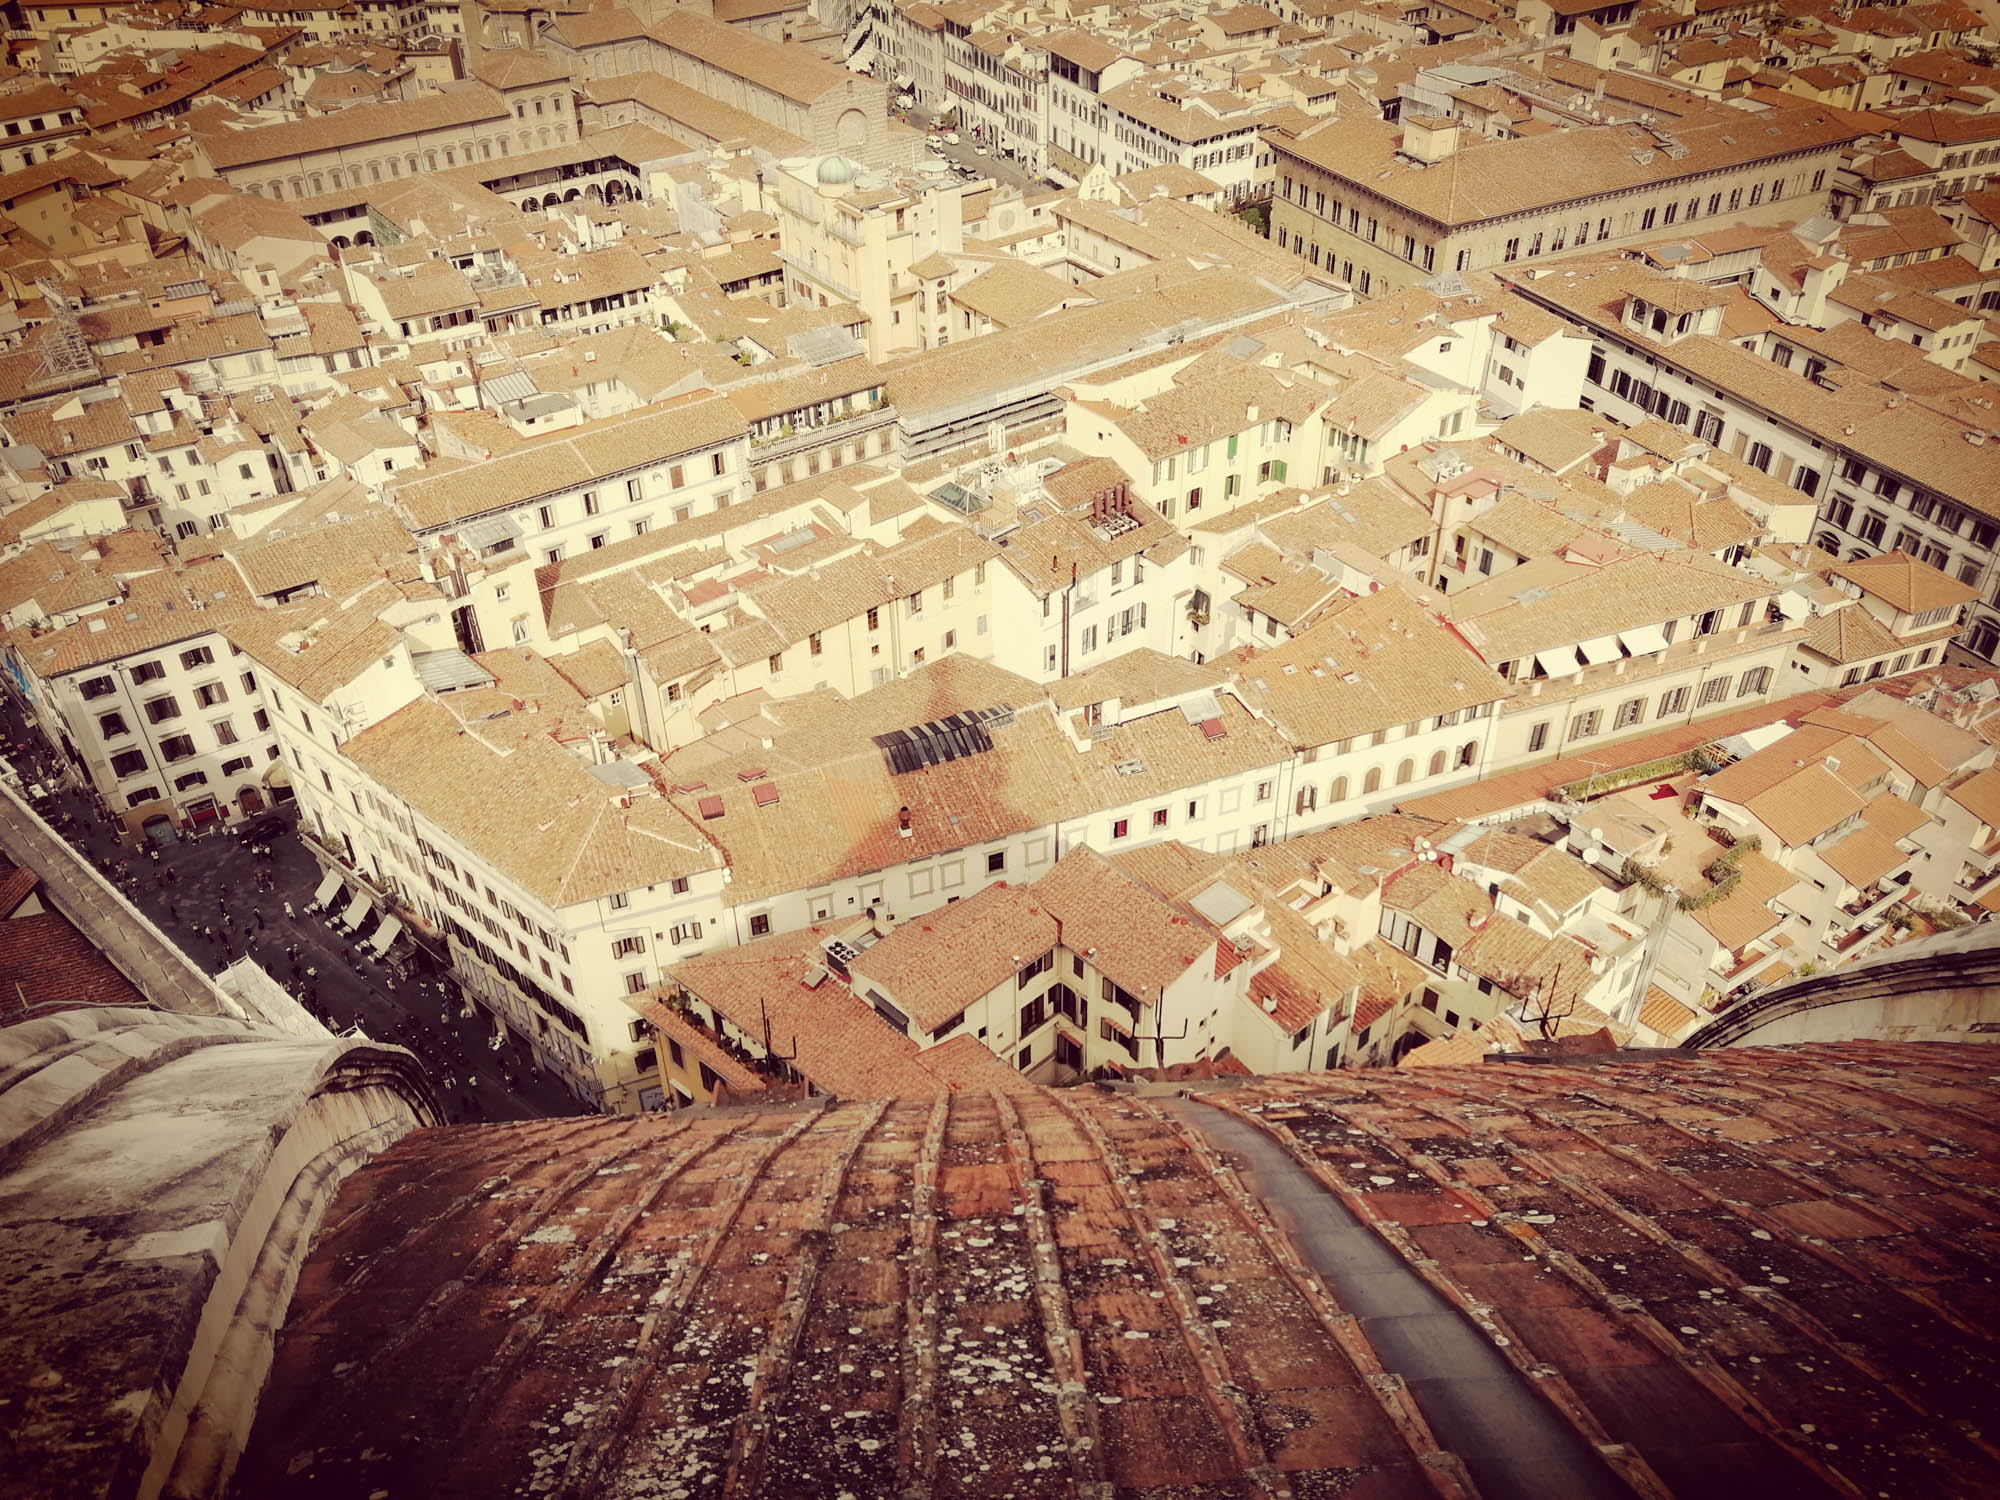 Dóm tetejéről, Firenze